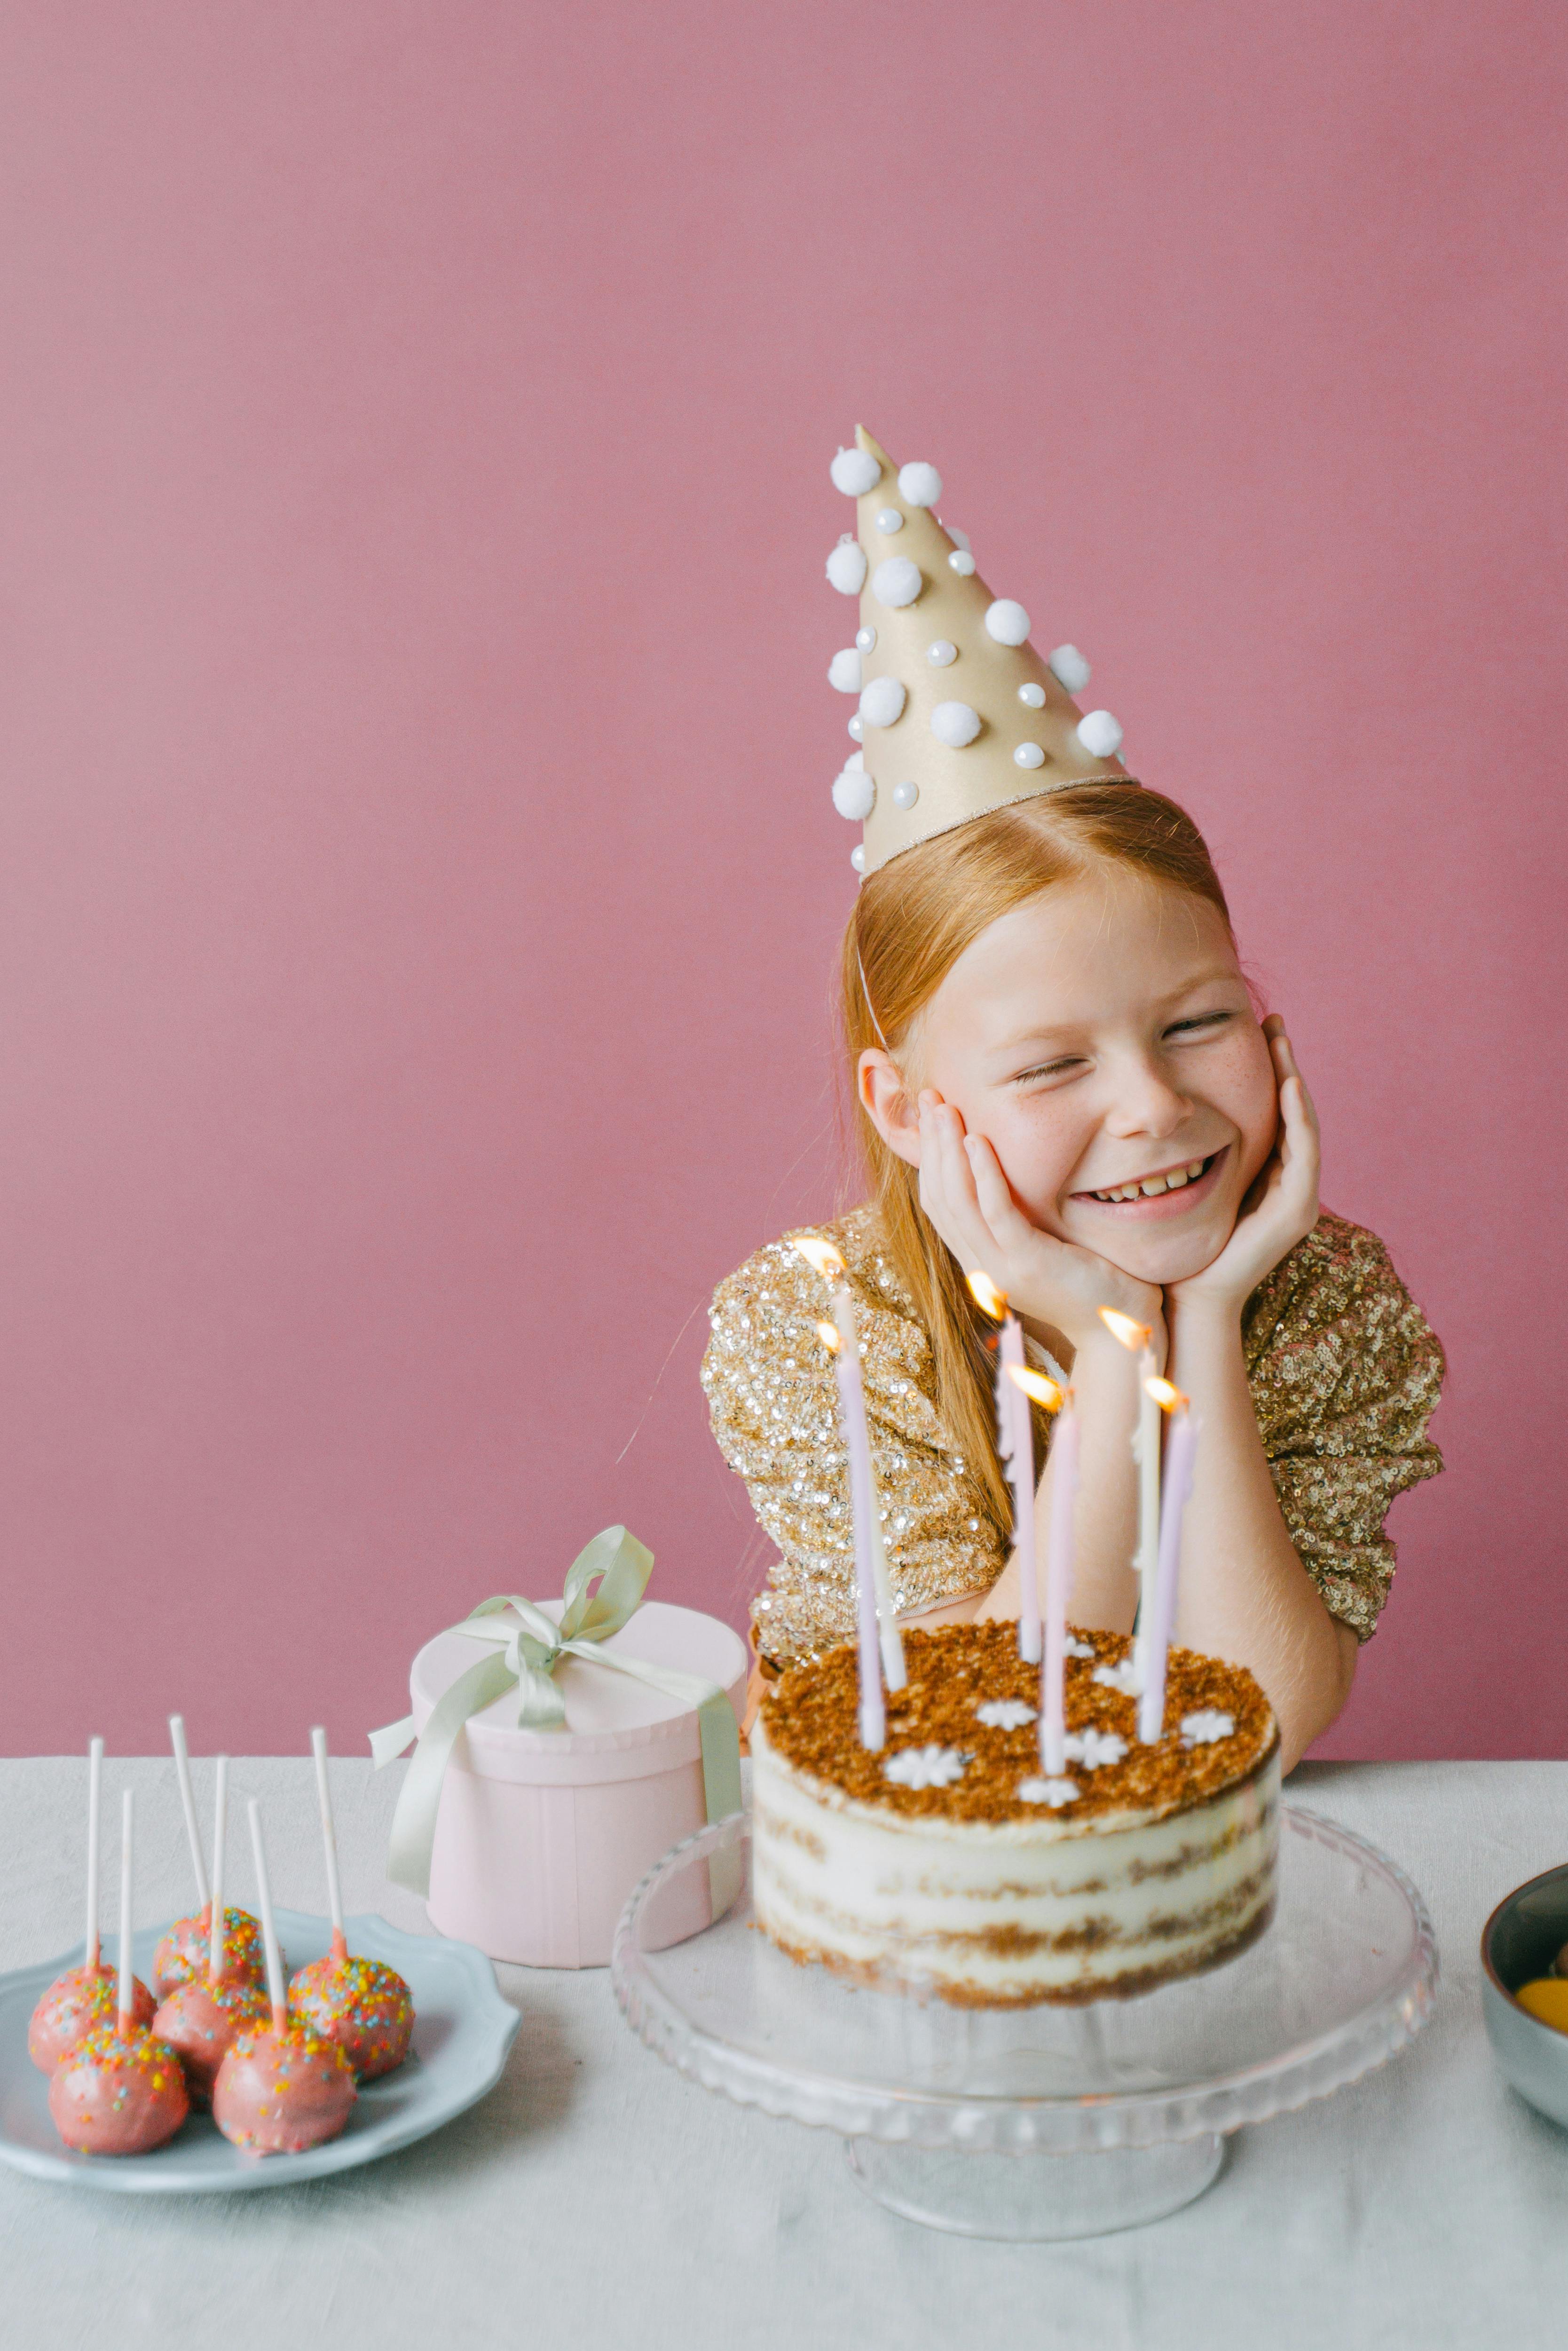 Une petite fille qui fête son anniversaire | Source : Pexels